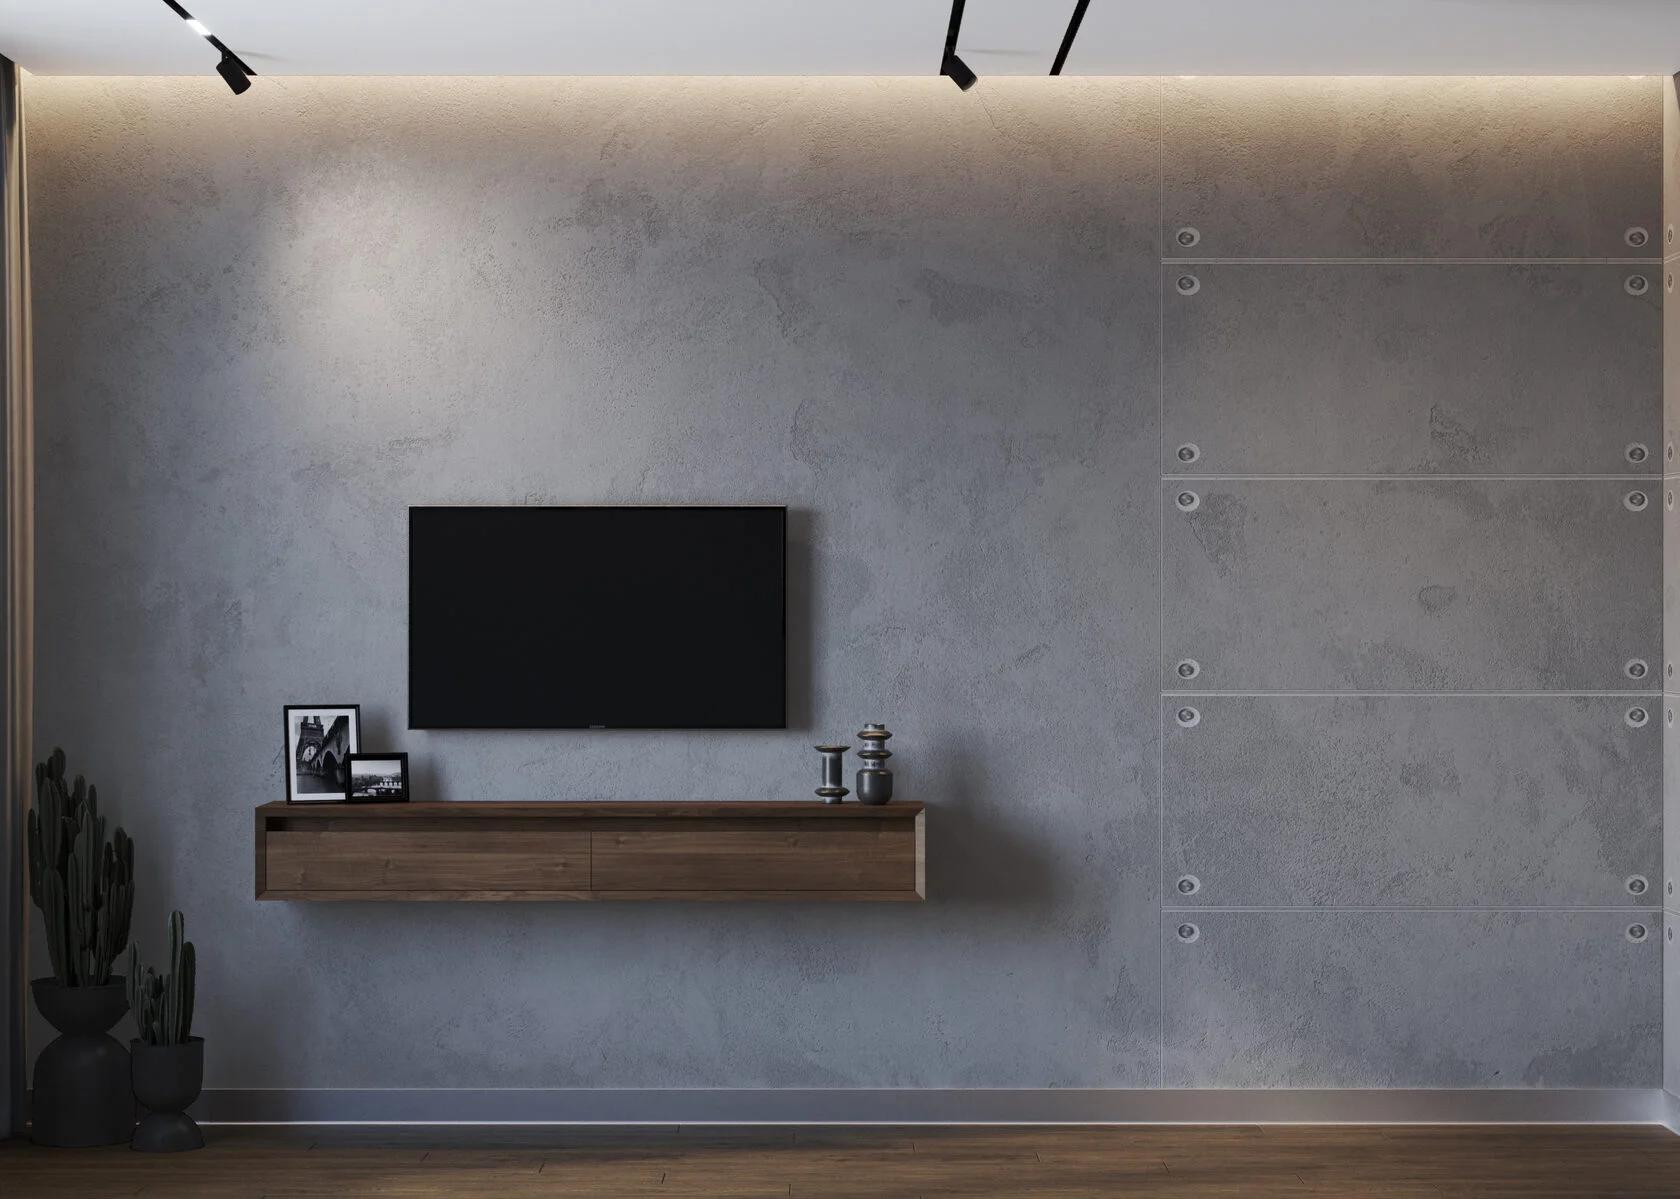 Интерьер cтеной с телевизором, телевизором на рейках, телевизором на стене, керамогранитом на стену с телевизором и подсветкой настенной